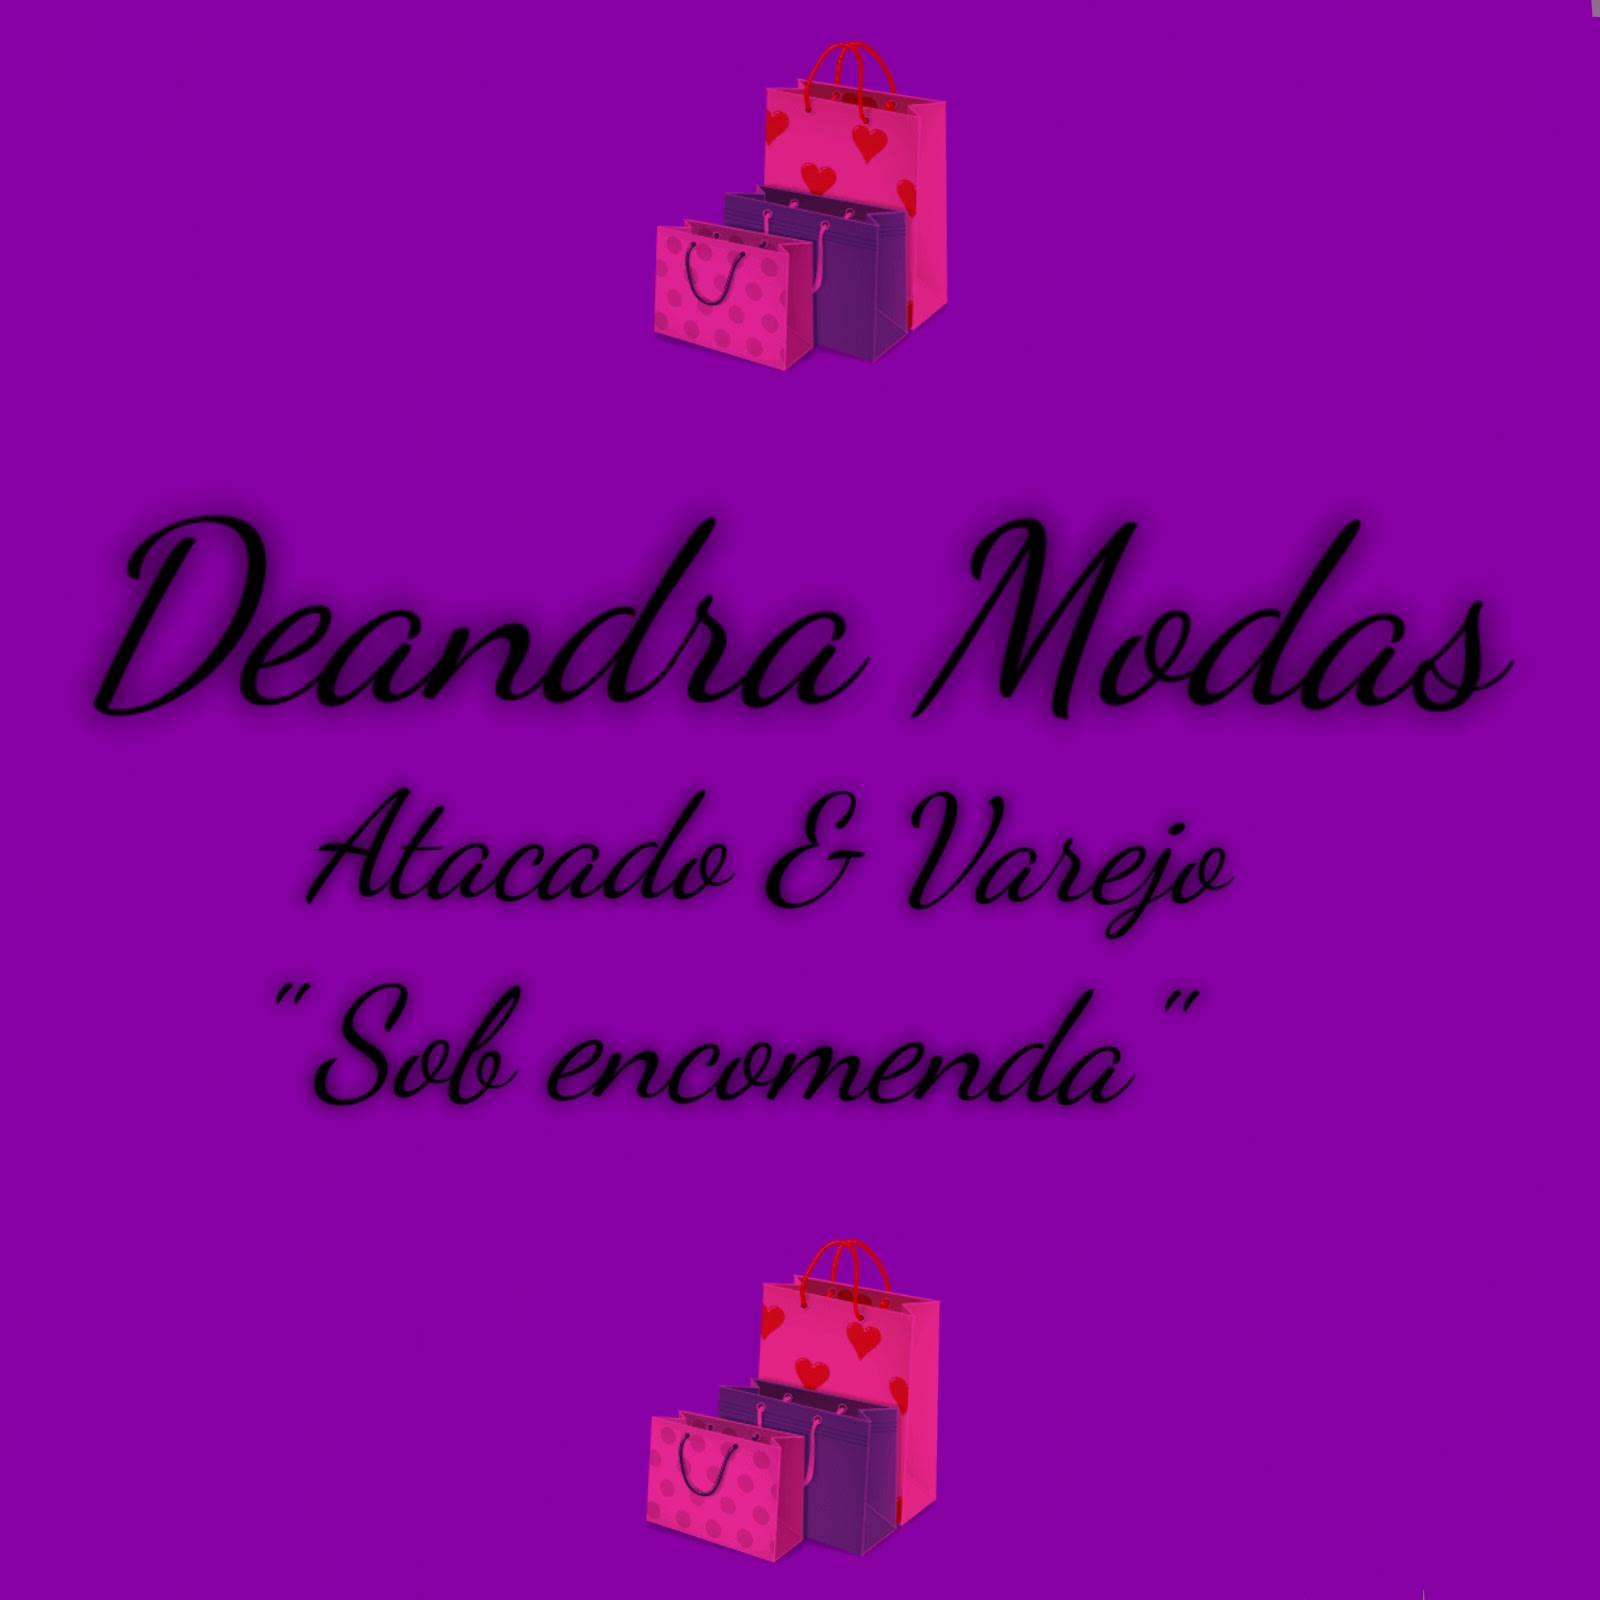 Deandra Modas